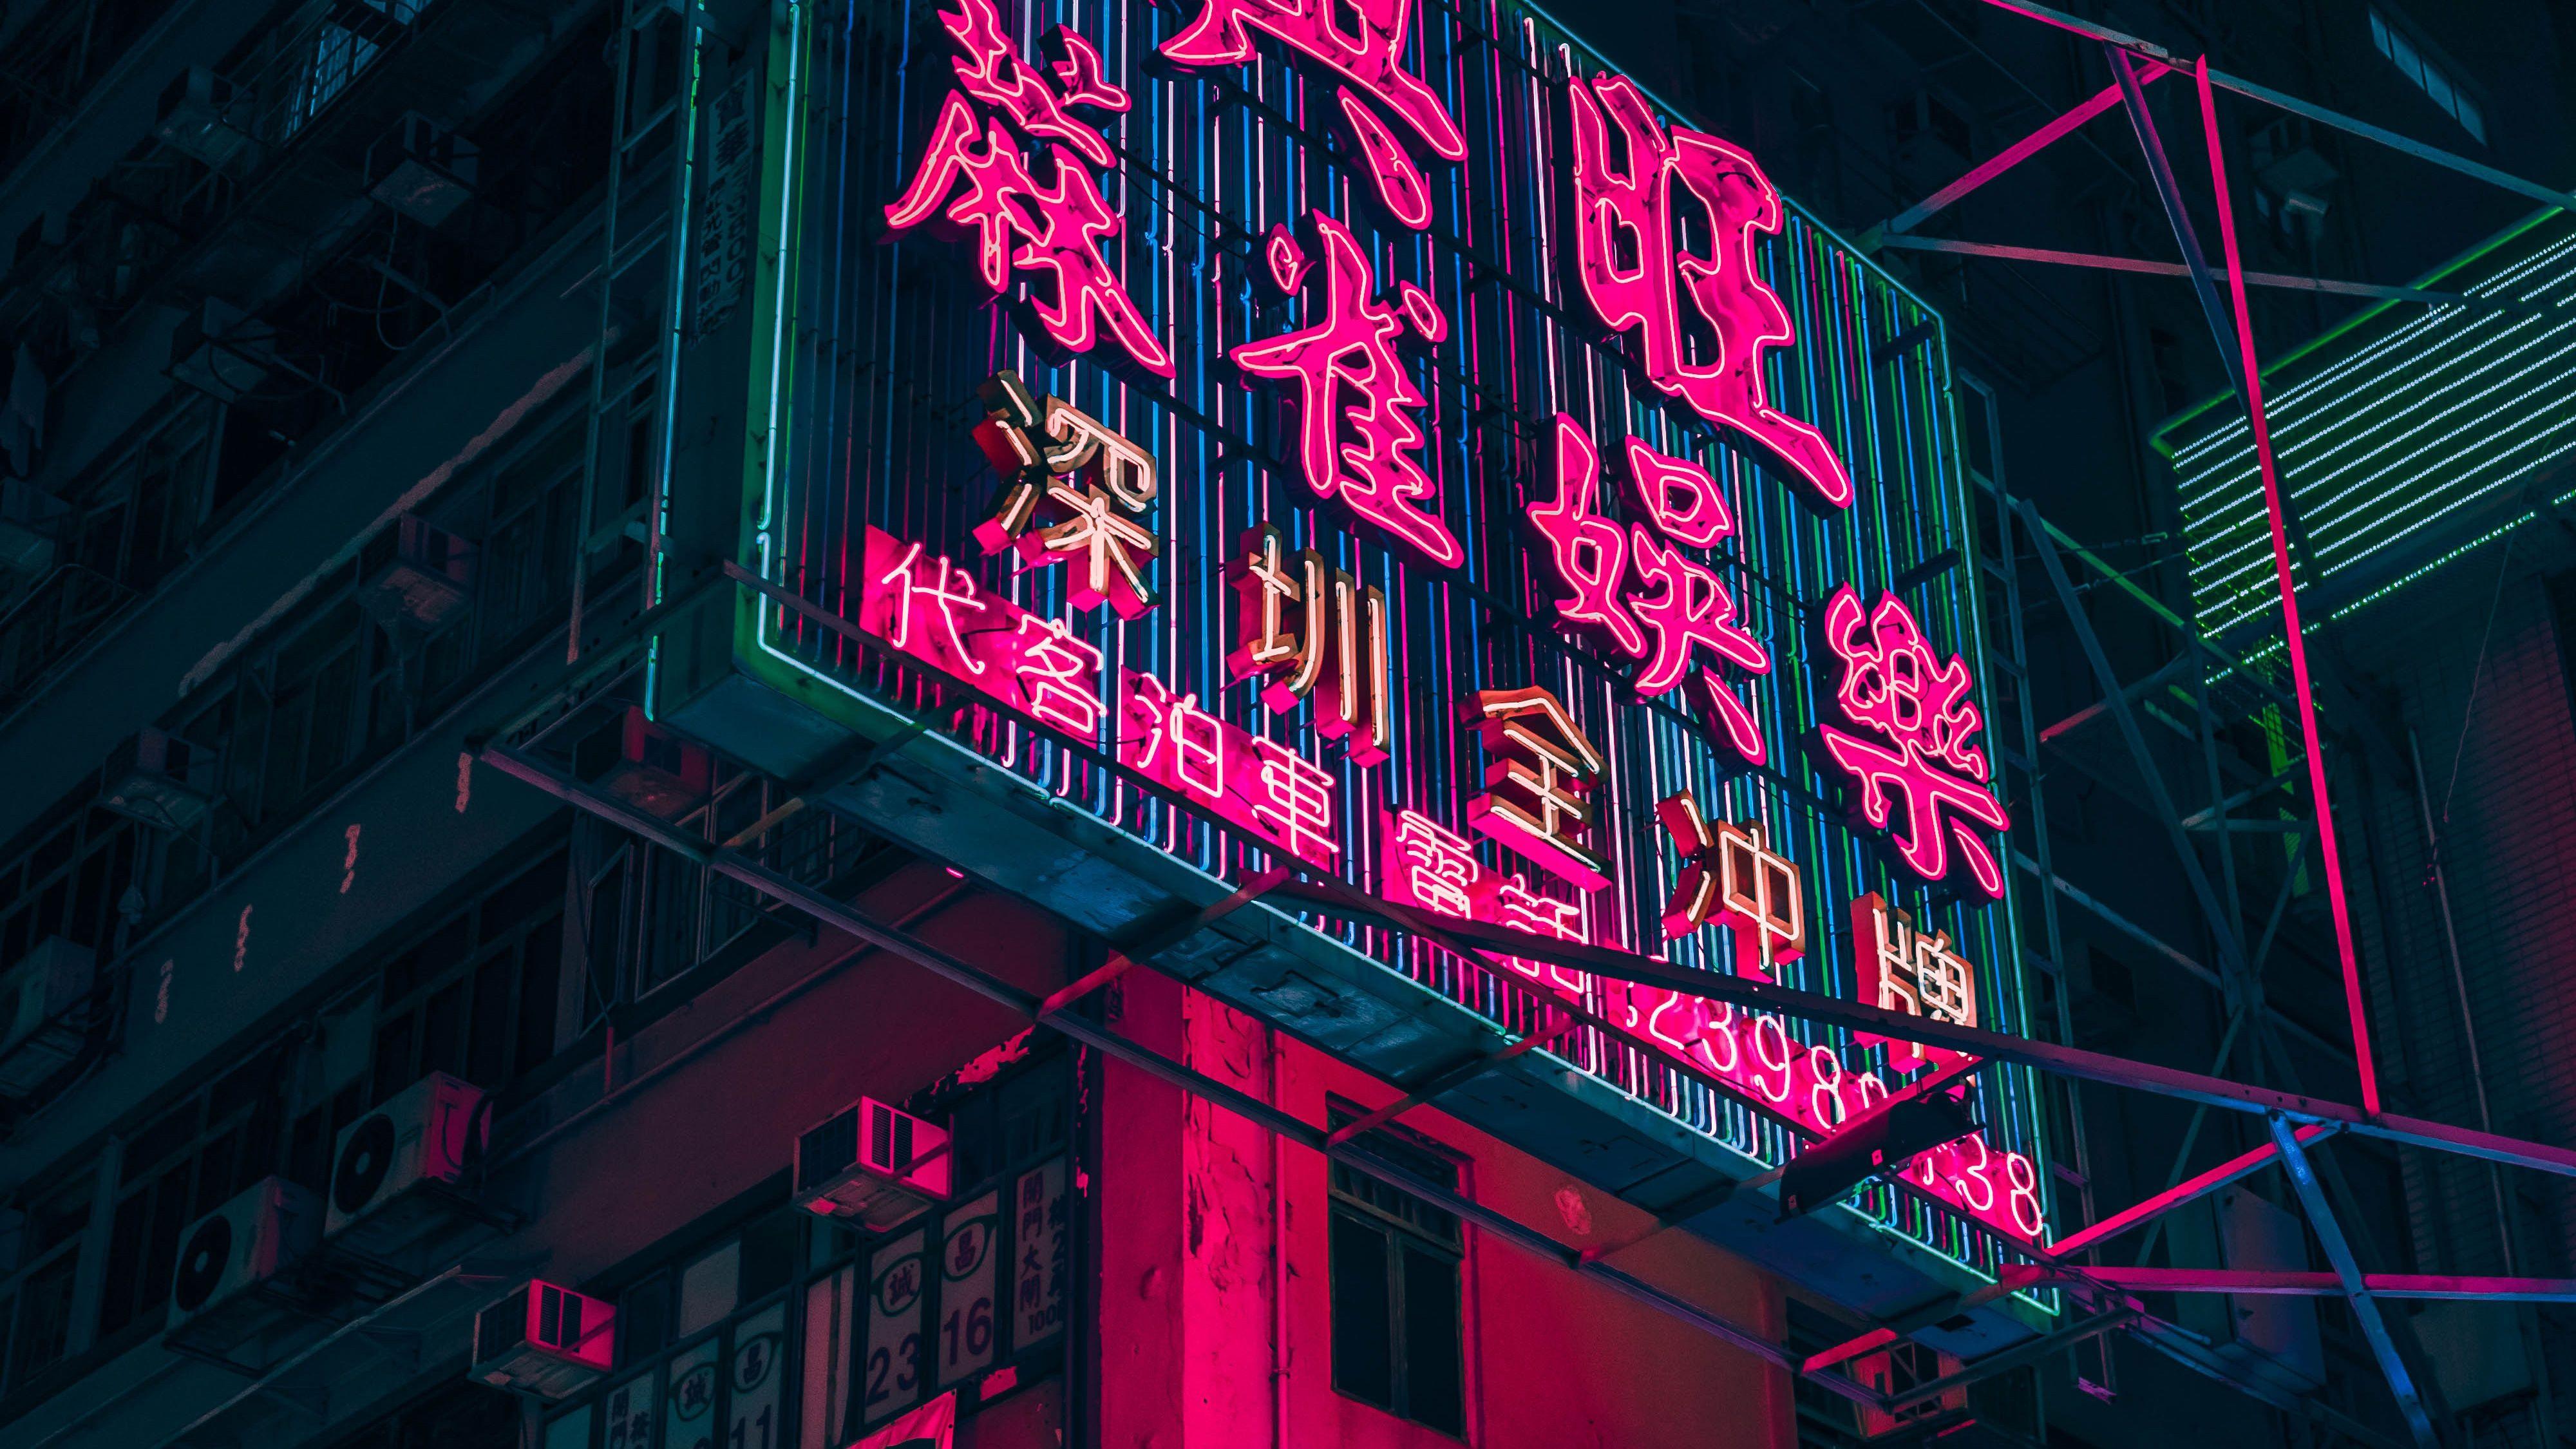 4000x2250 Thành phố Neon của Hồng Kông - Đèn Neon đỏ thẩm mỹ, HD